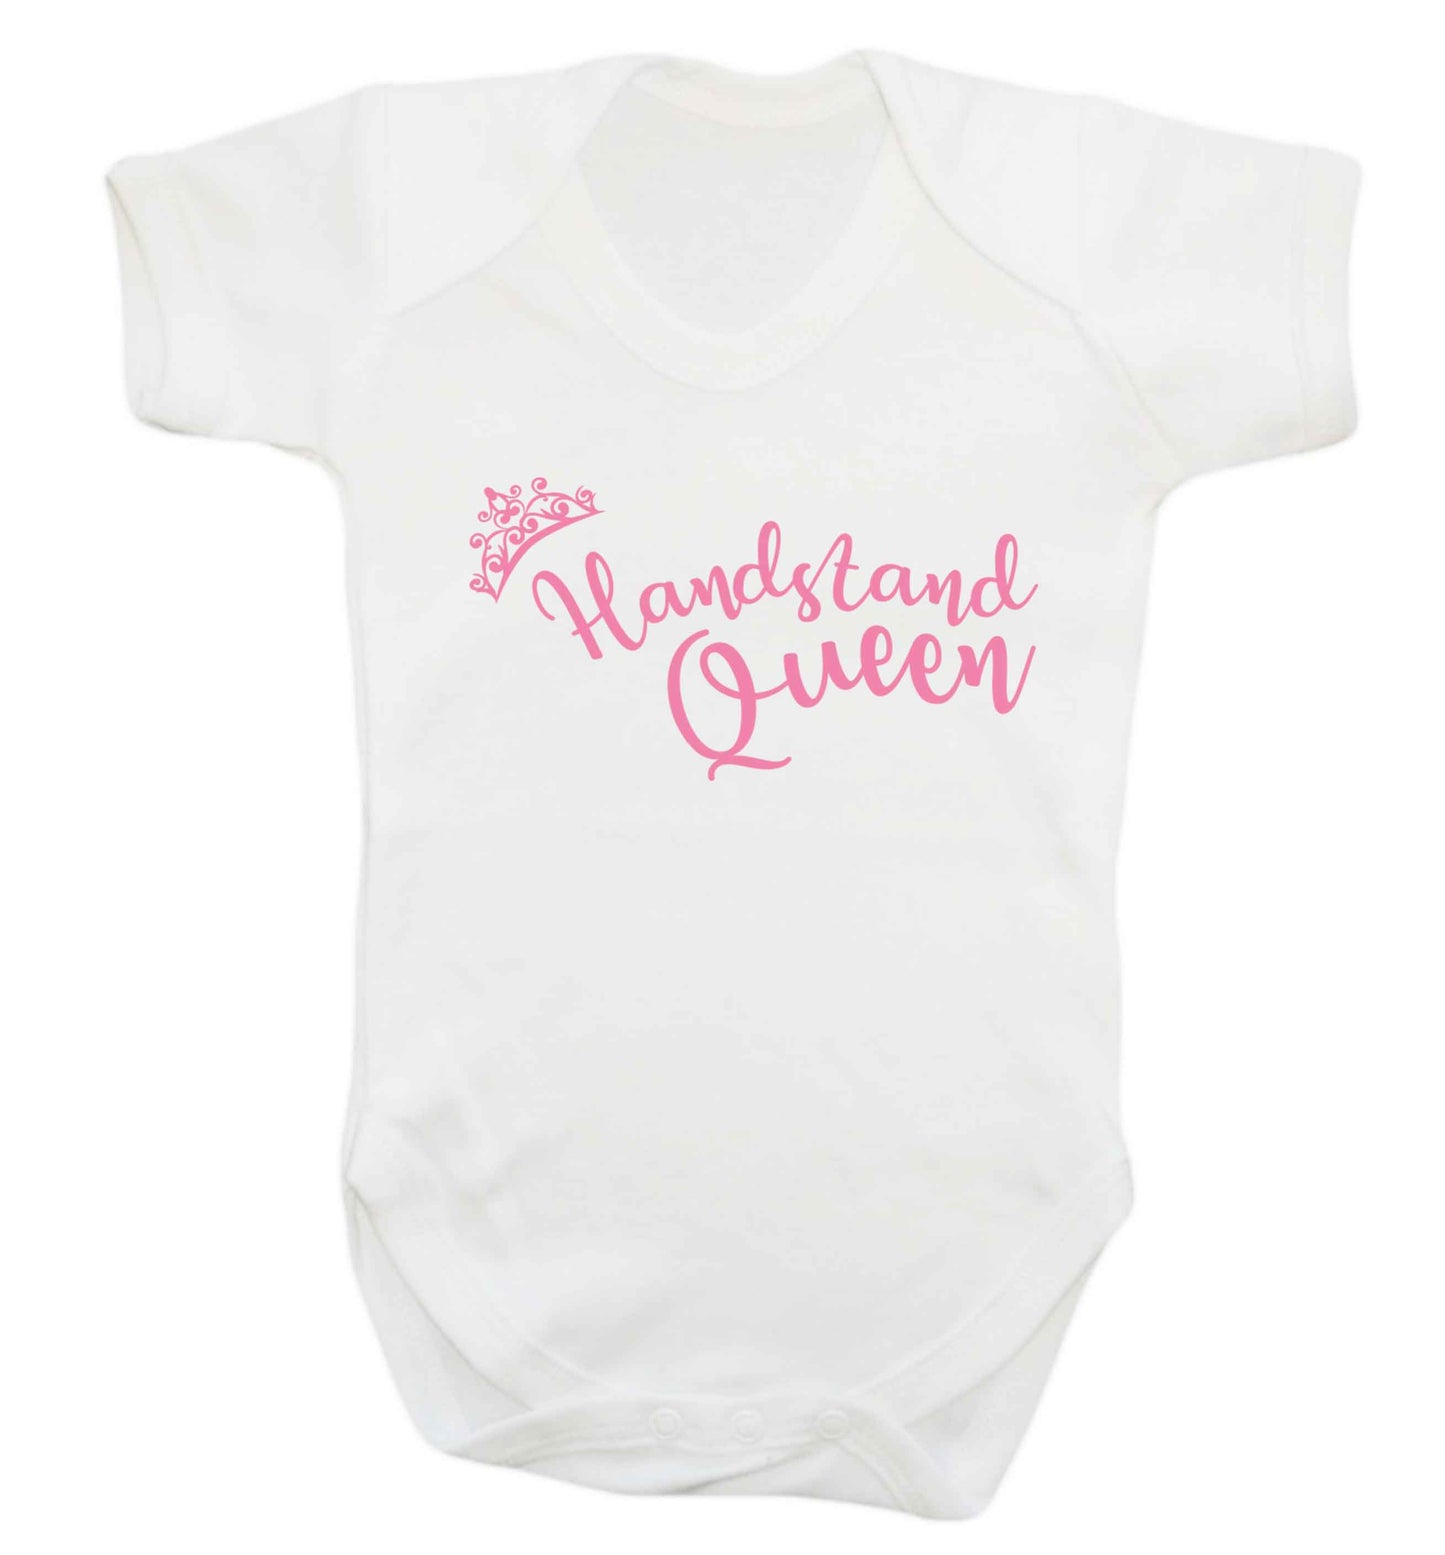 Handstand Queen Baby Vest white 18-24 months